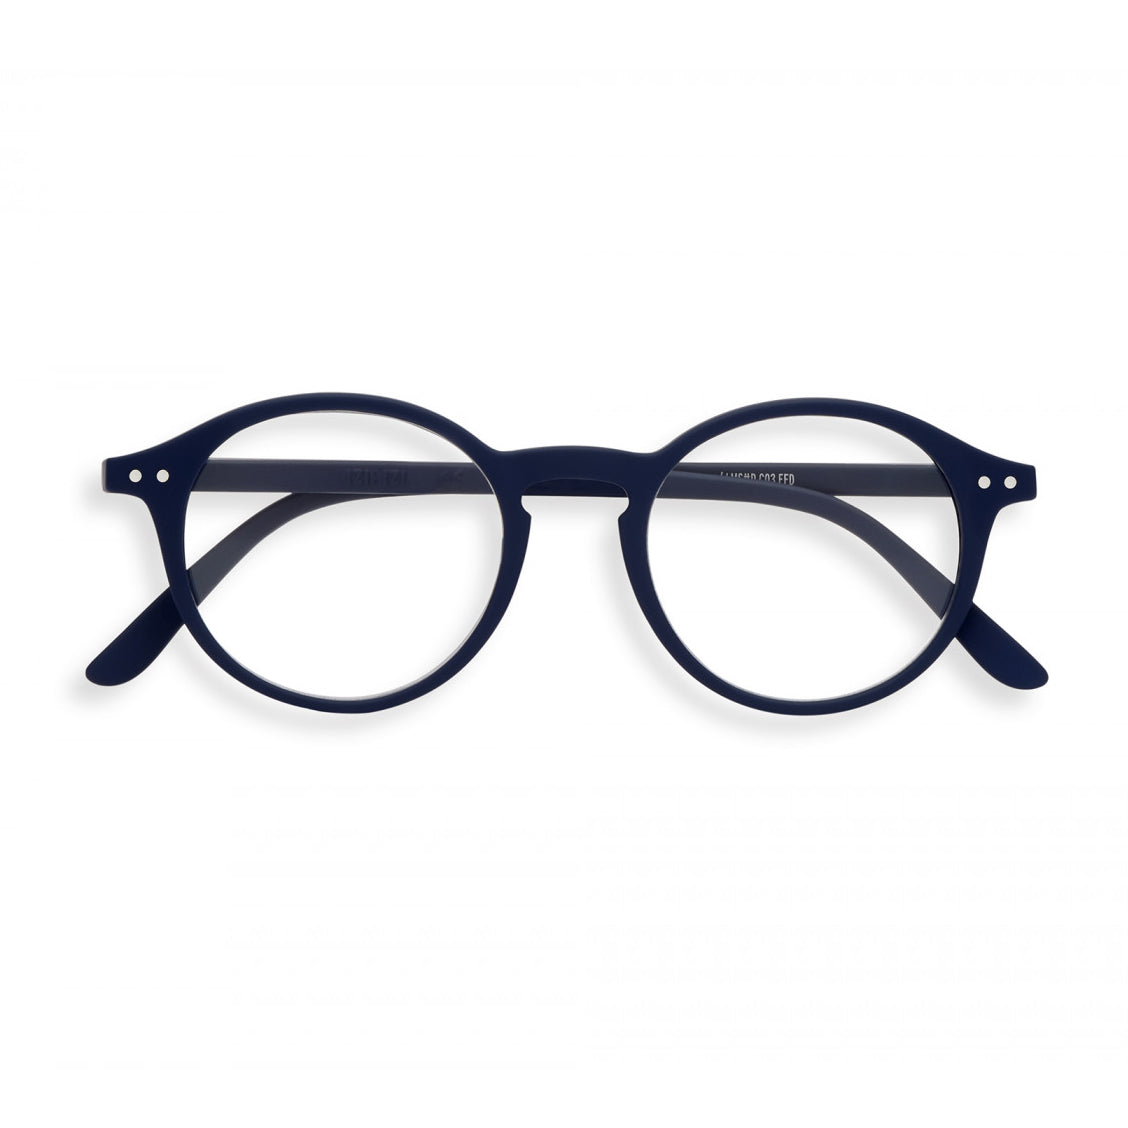 izipizi reading glasses D shape navy blue